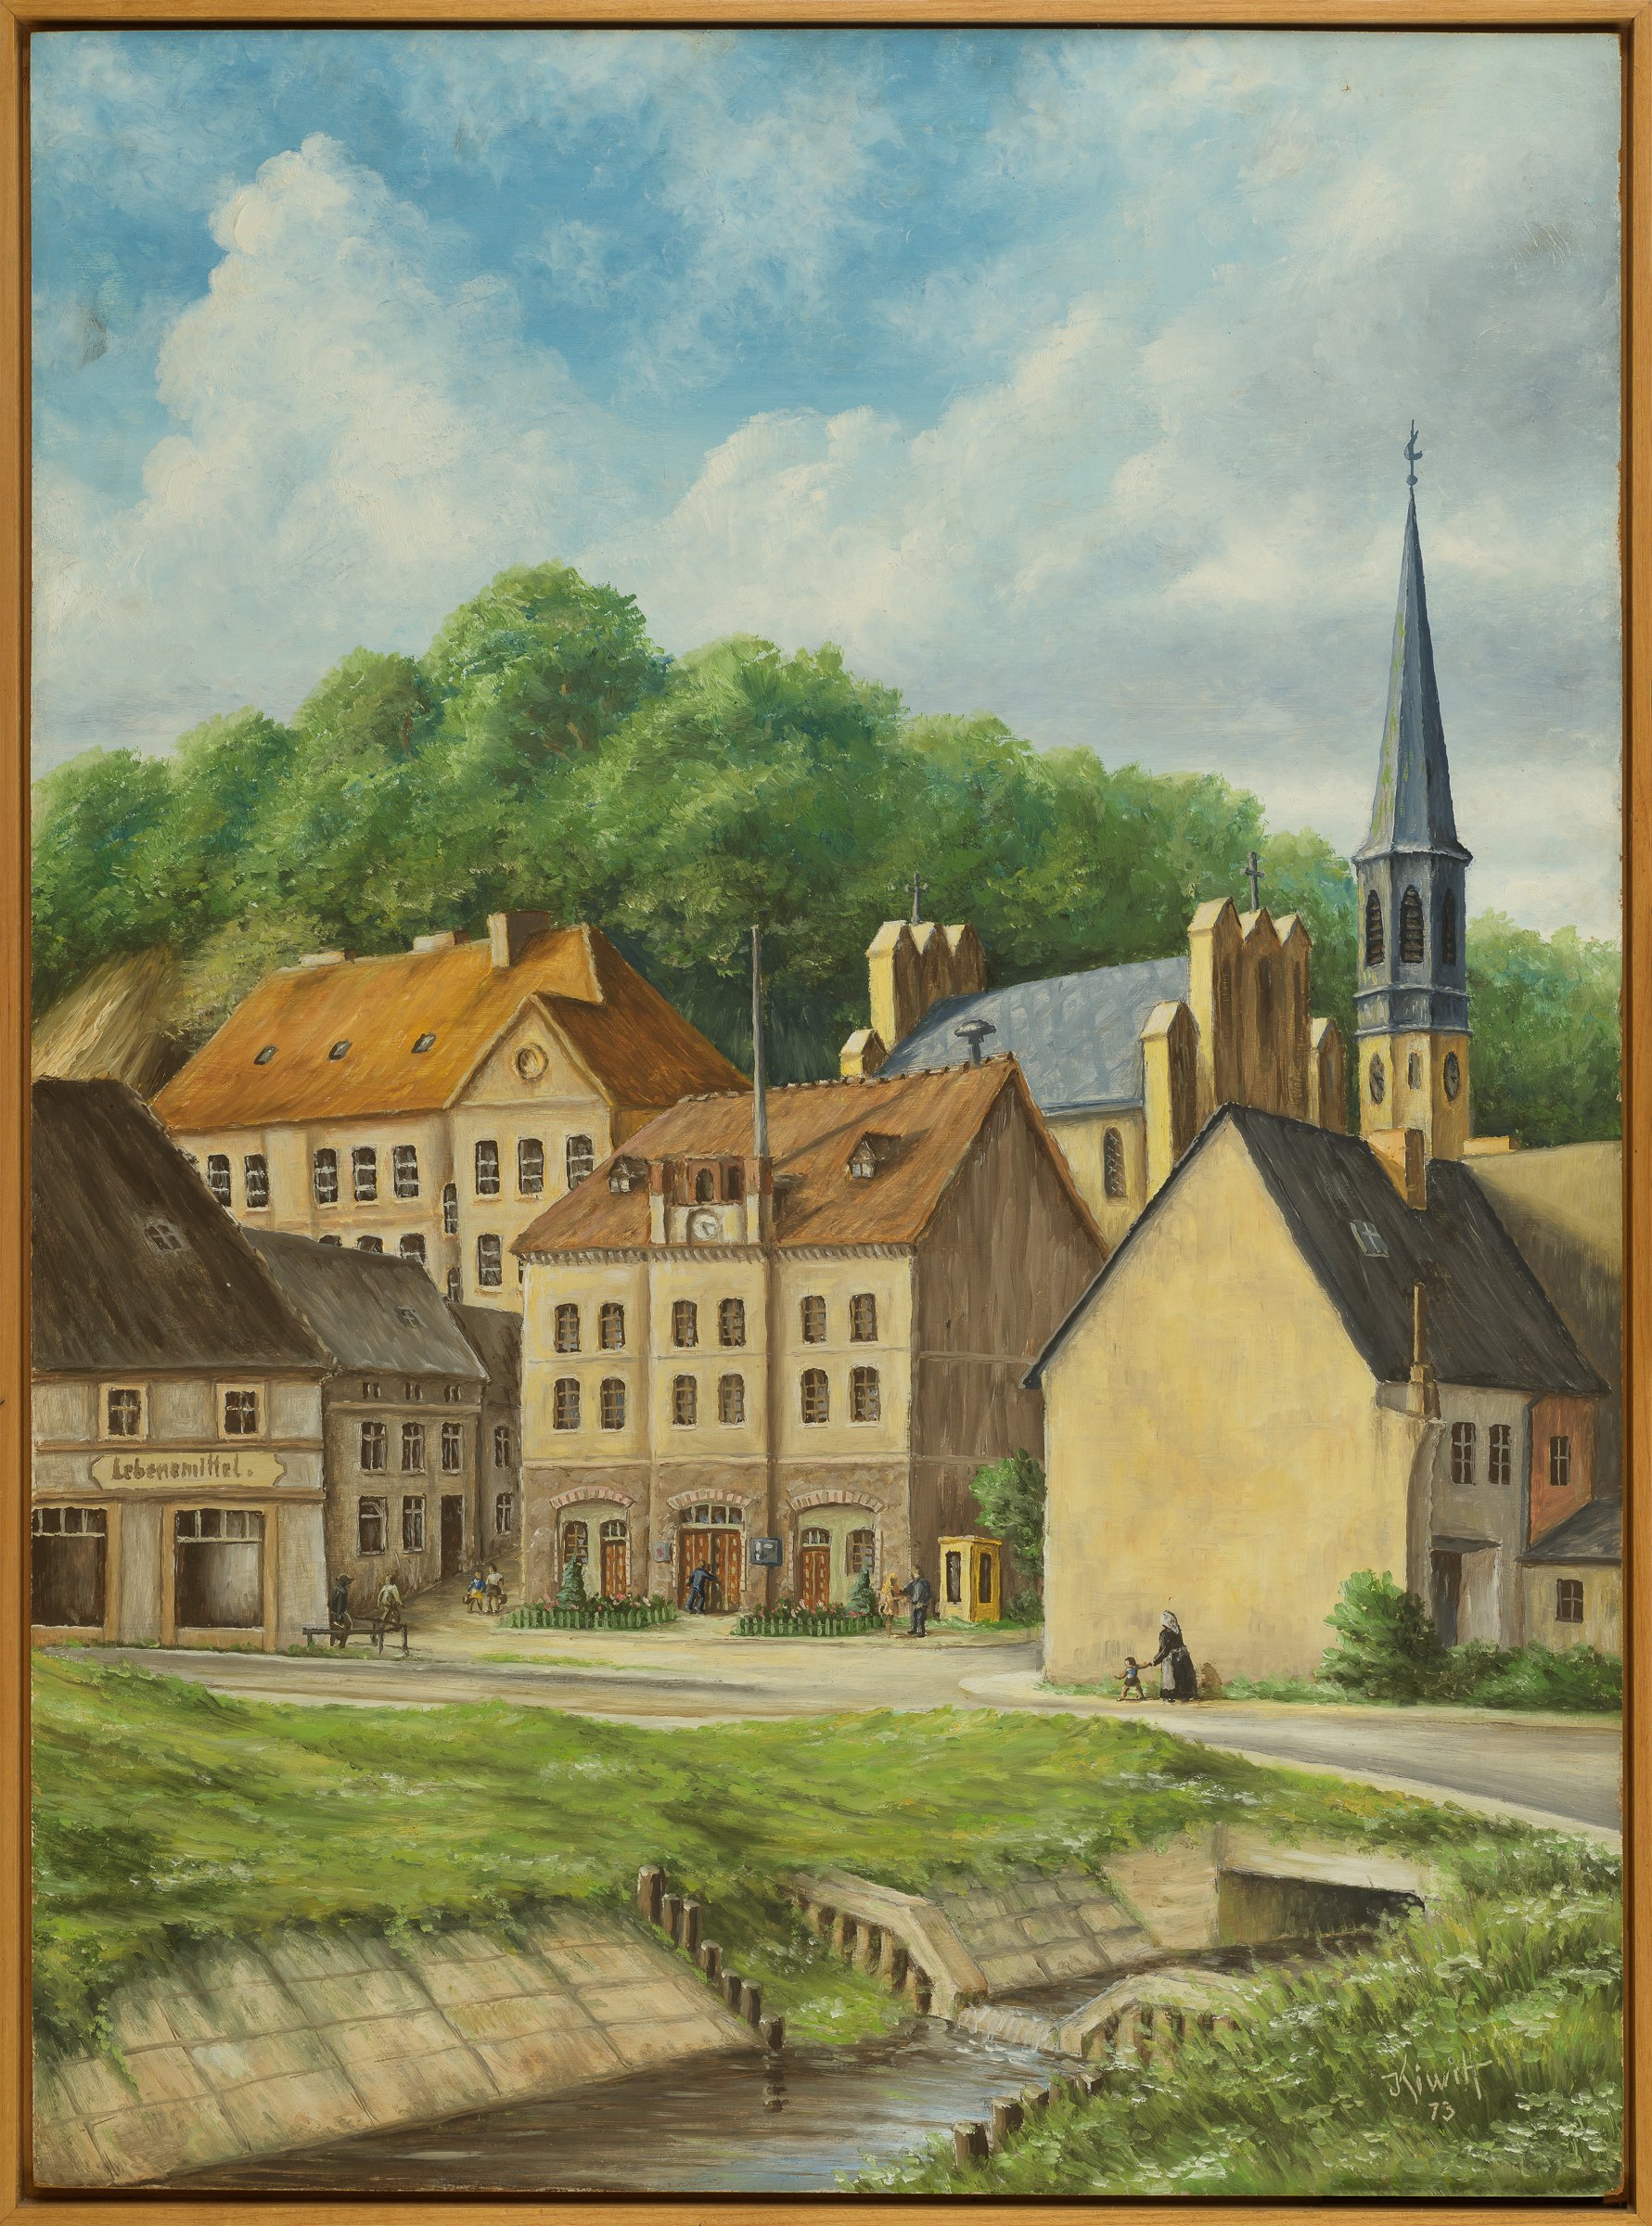 Ölbild "Marktplatz und Kirche" (Binnenschifffahrts-Museum Oderberg CC BY-NC-SA)